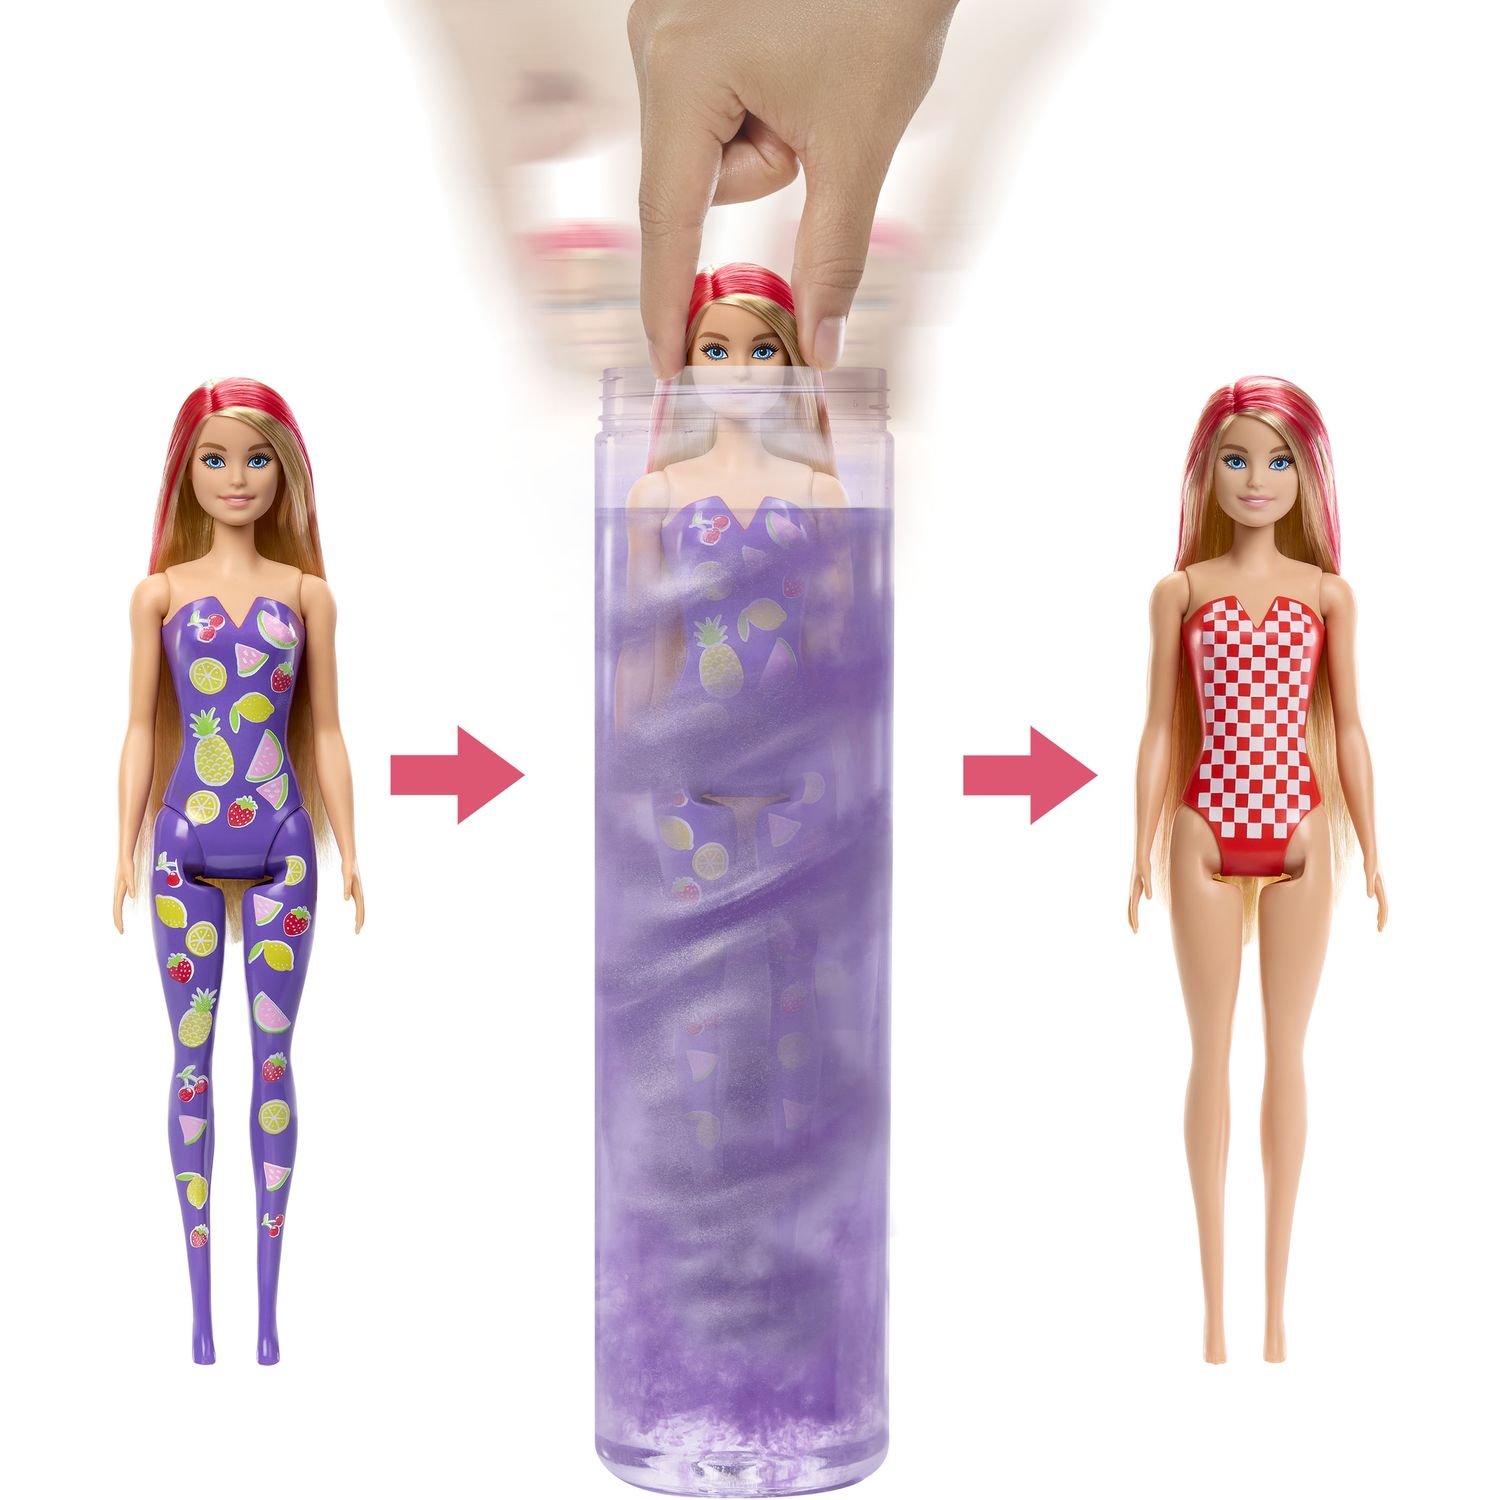 Лялька Barbie Кольорове перевтілення Фруктовий сюрприз, в асортименті (HJX49) - фото 4